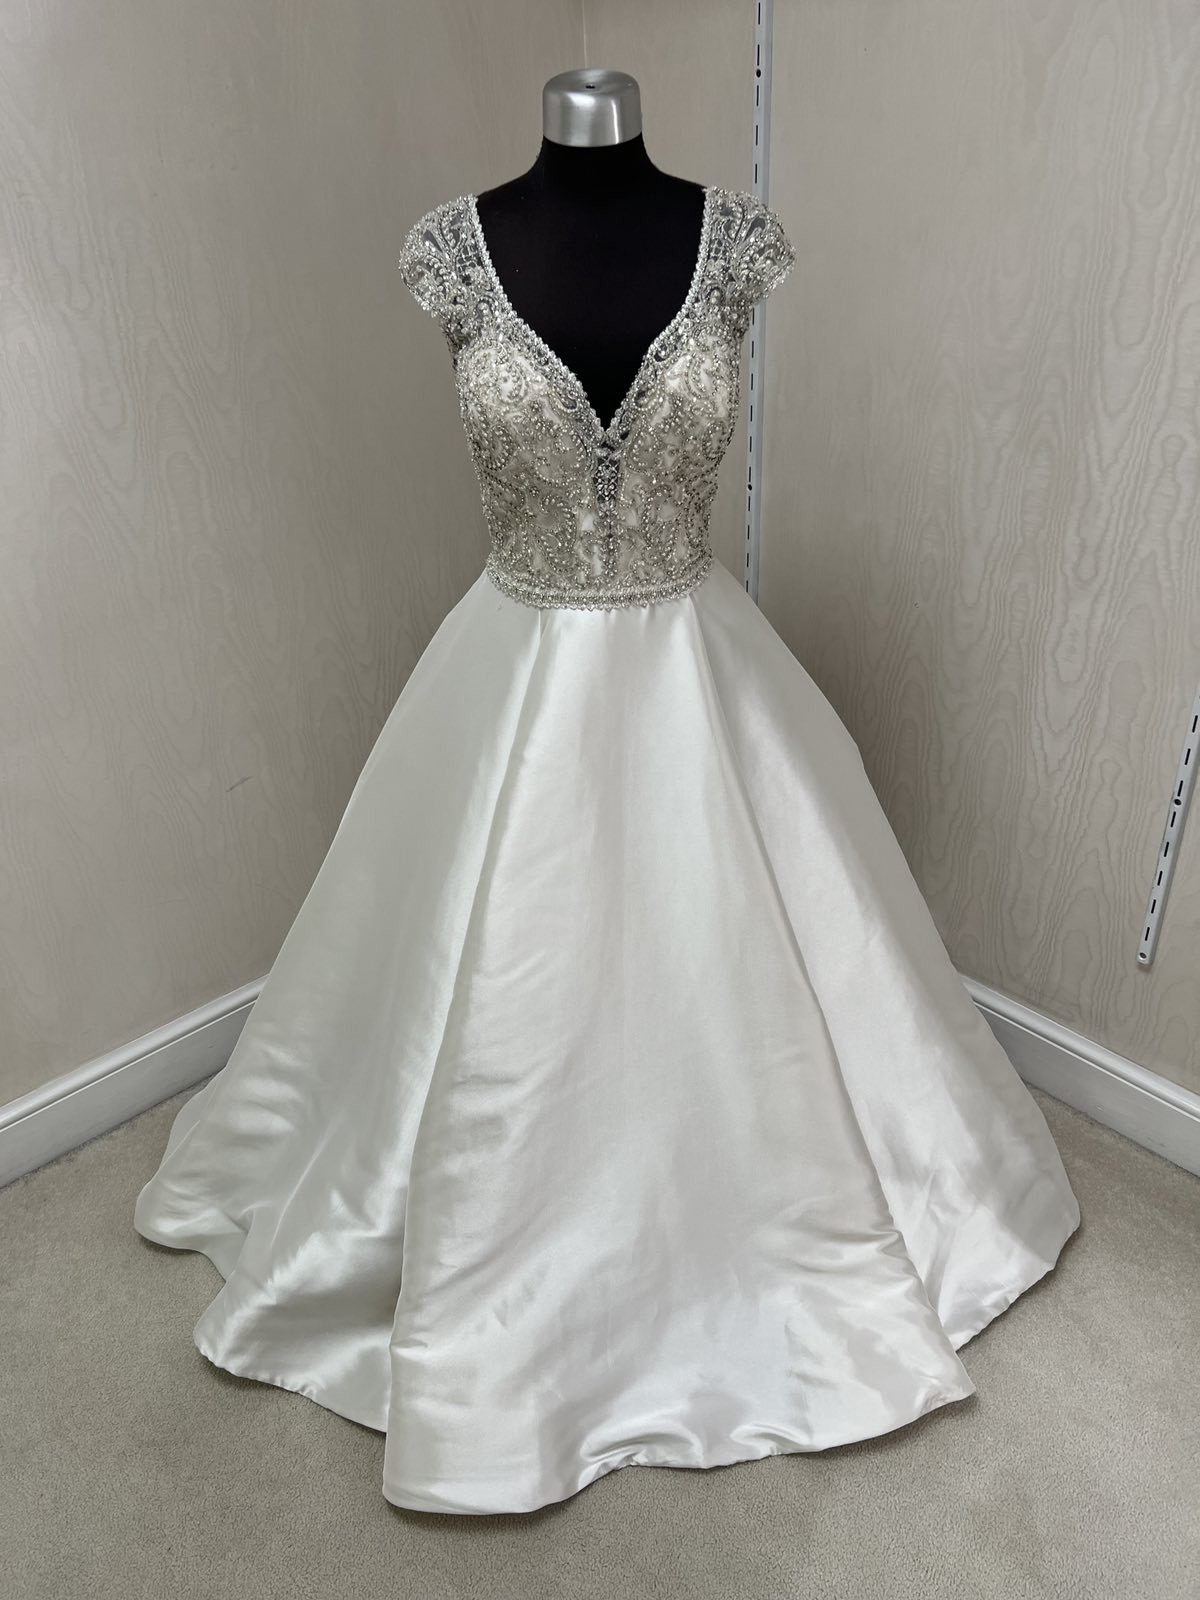 Allure Bridals 9710 Sample Wedding Dress Save 56% - Stillwhite